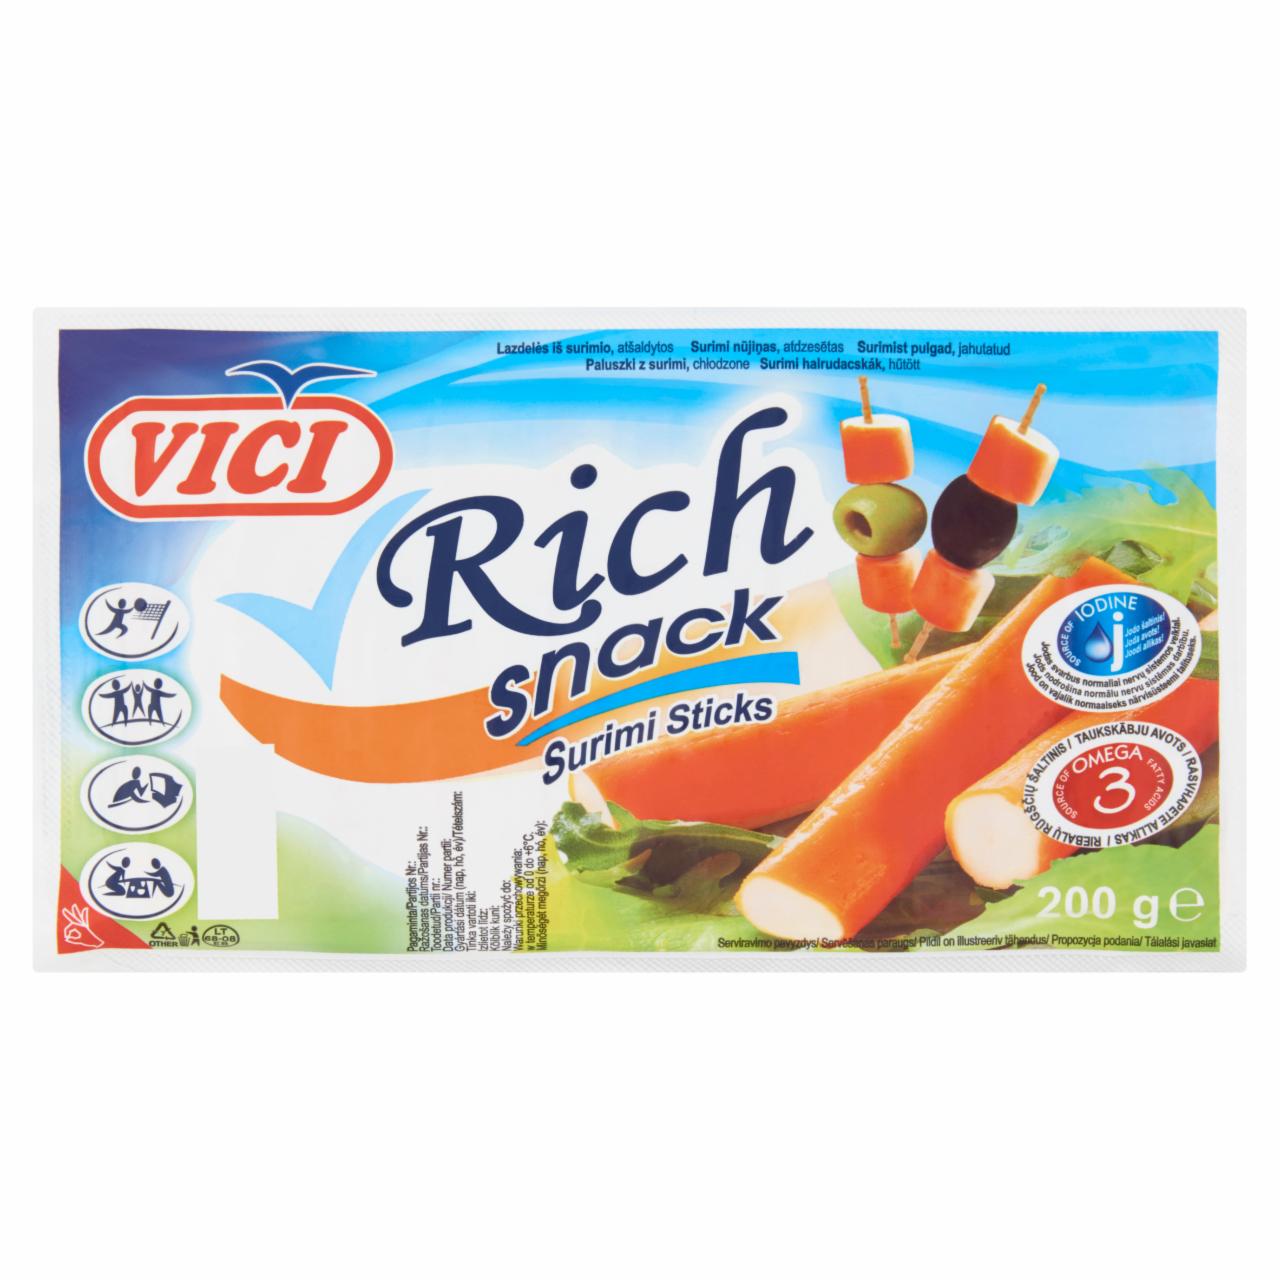 Képek - Vici Rich Snack hűtött surimi halrudacskák 200 g